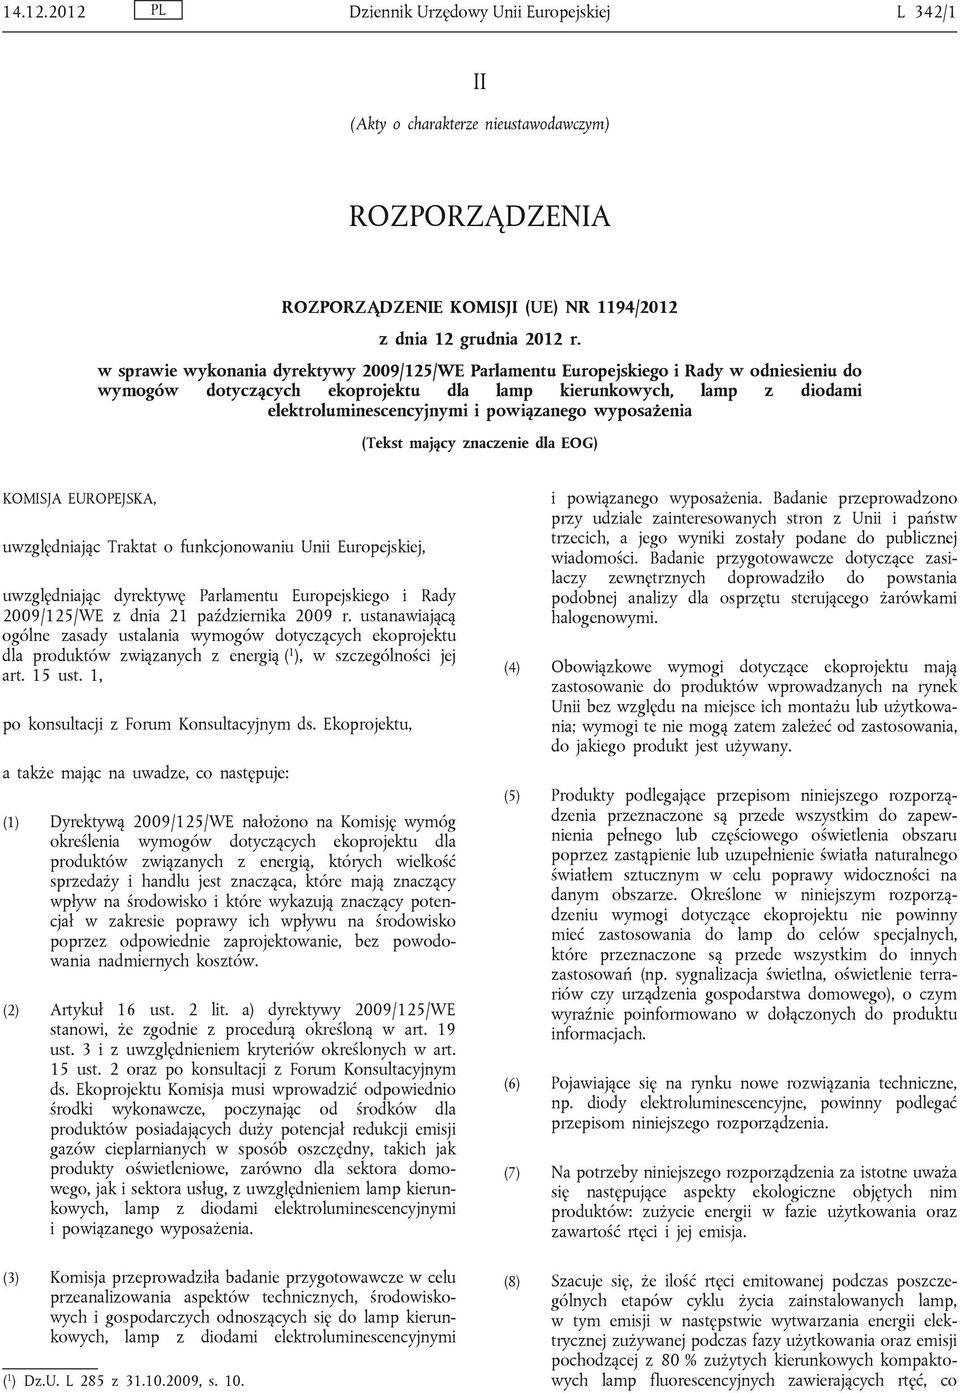 wyposażenia (Tekst mający znaczenie dla EOG) KOMISJA EUROPEJSKA, uwzględniając Traktat o funkcjonowaniu Unii Europejskiej, uwzględniając dyrektywę Parlamentu Europejskiego i Rady 2009/125/WE z dnia